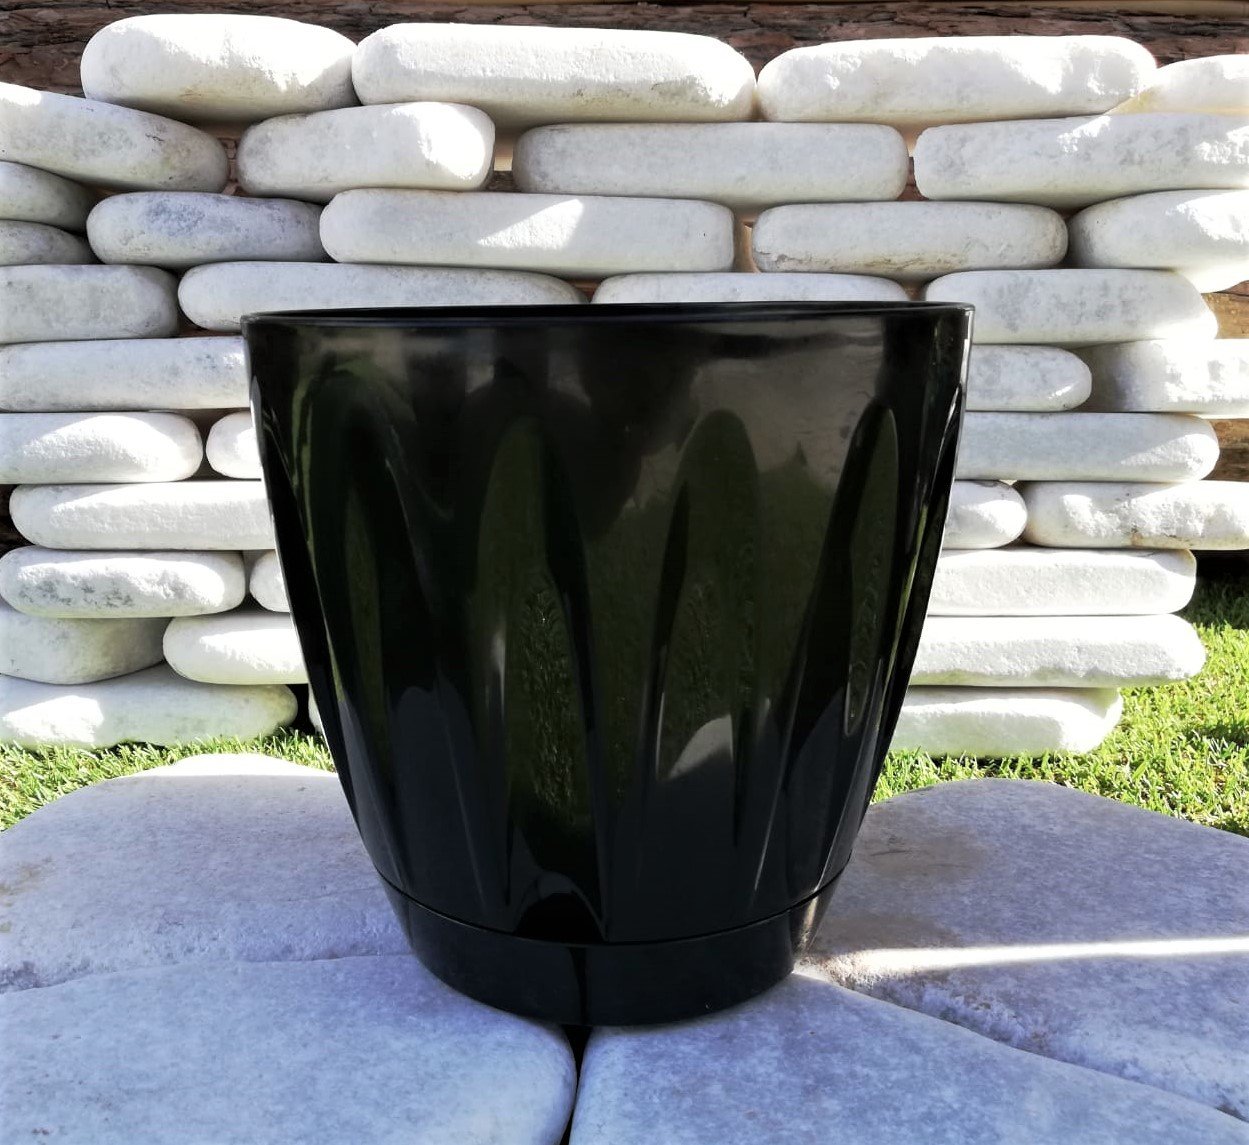 Renkli Saksı 6 LT 1 Adet Siyah Renk Papatya Model Plastik Tabaklı Çiçek Saksısı